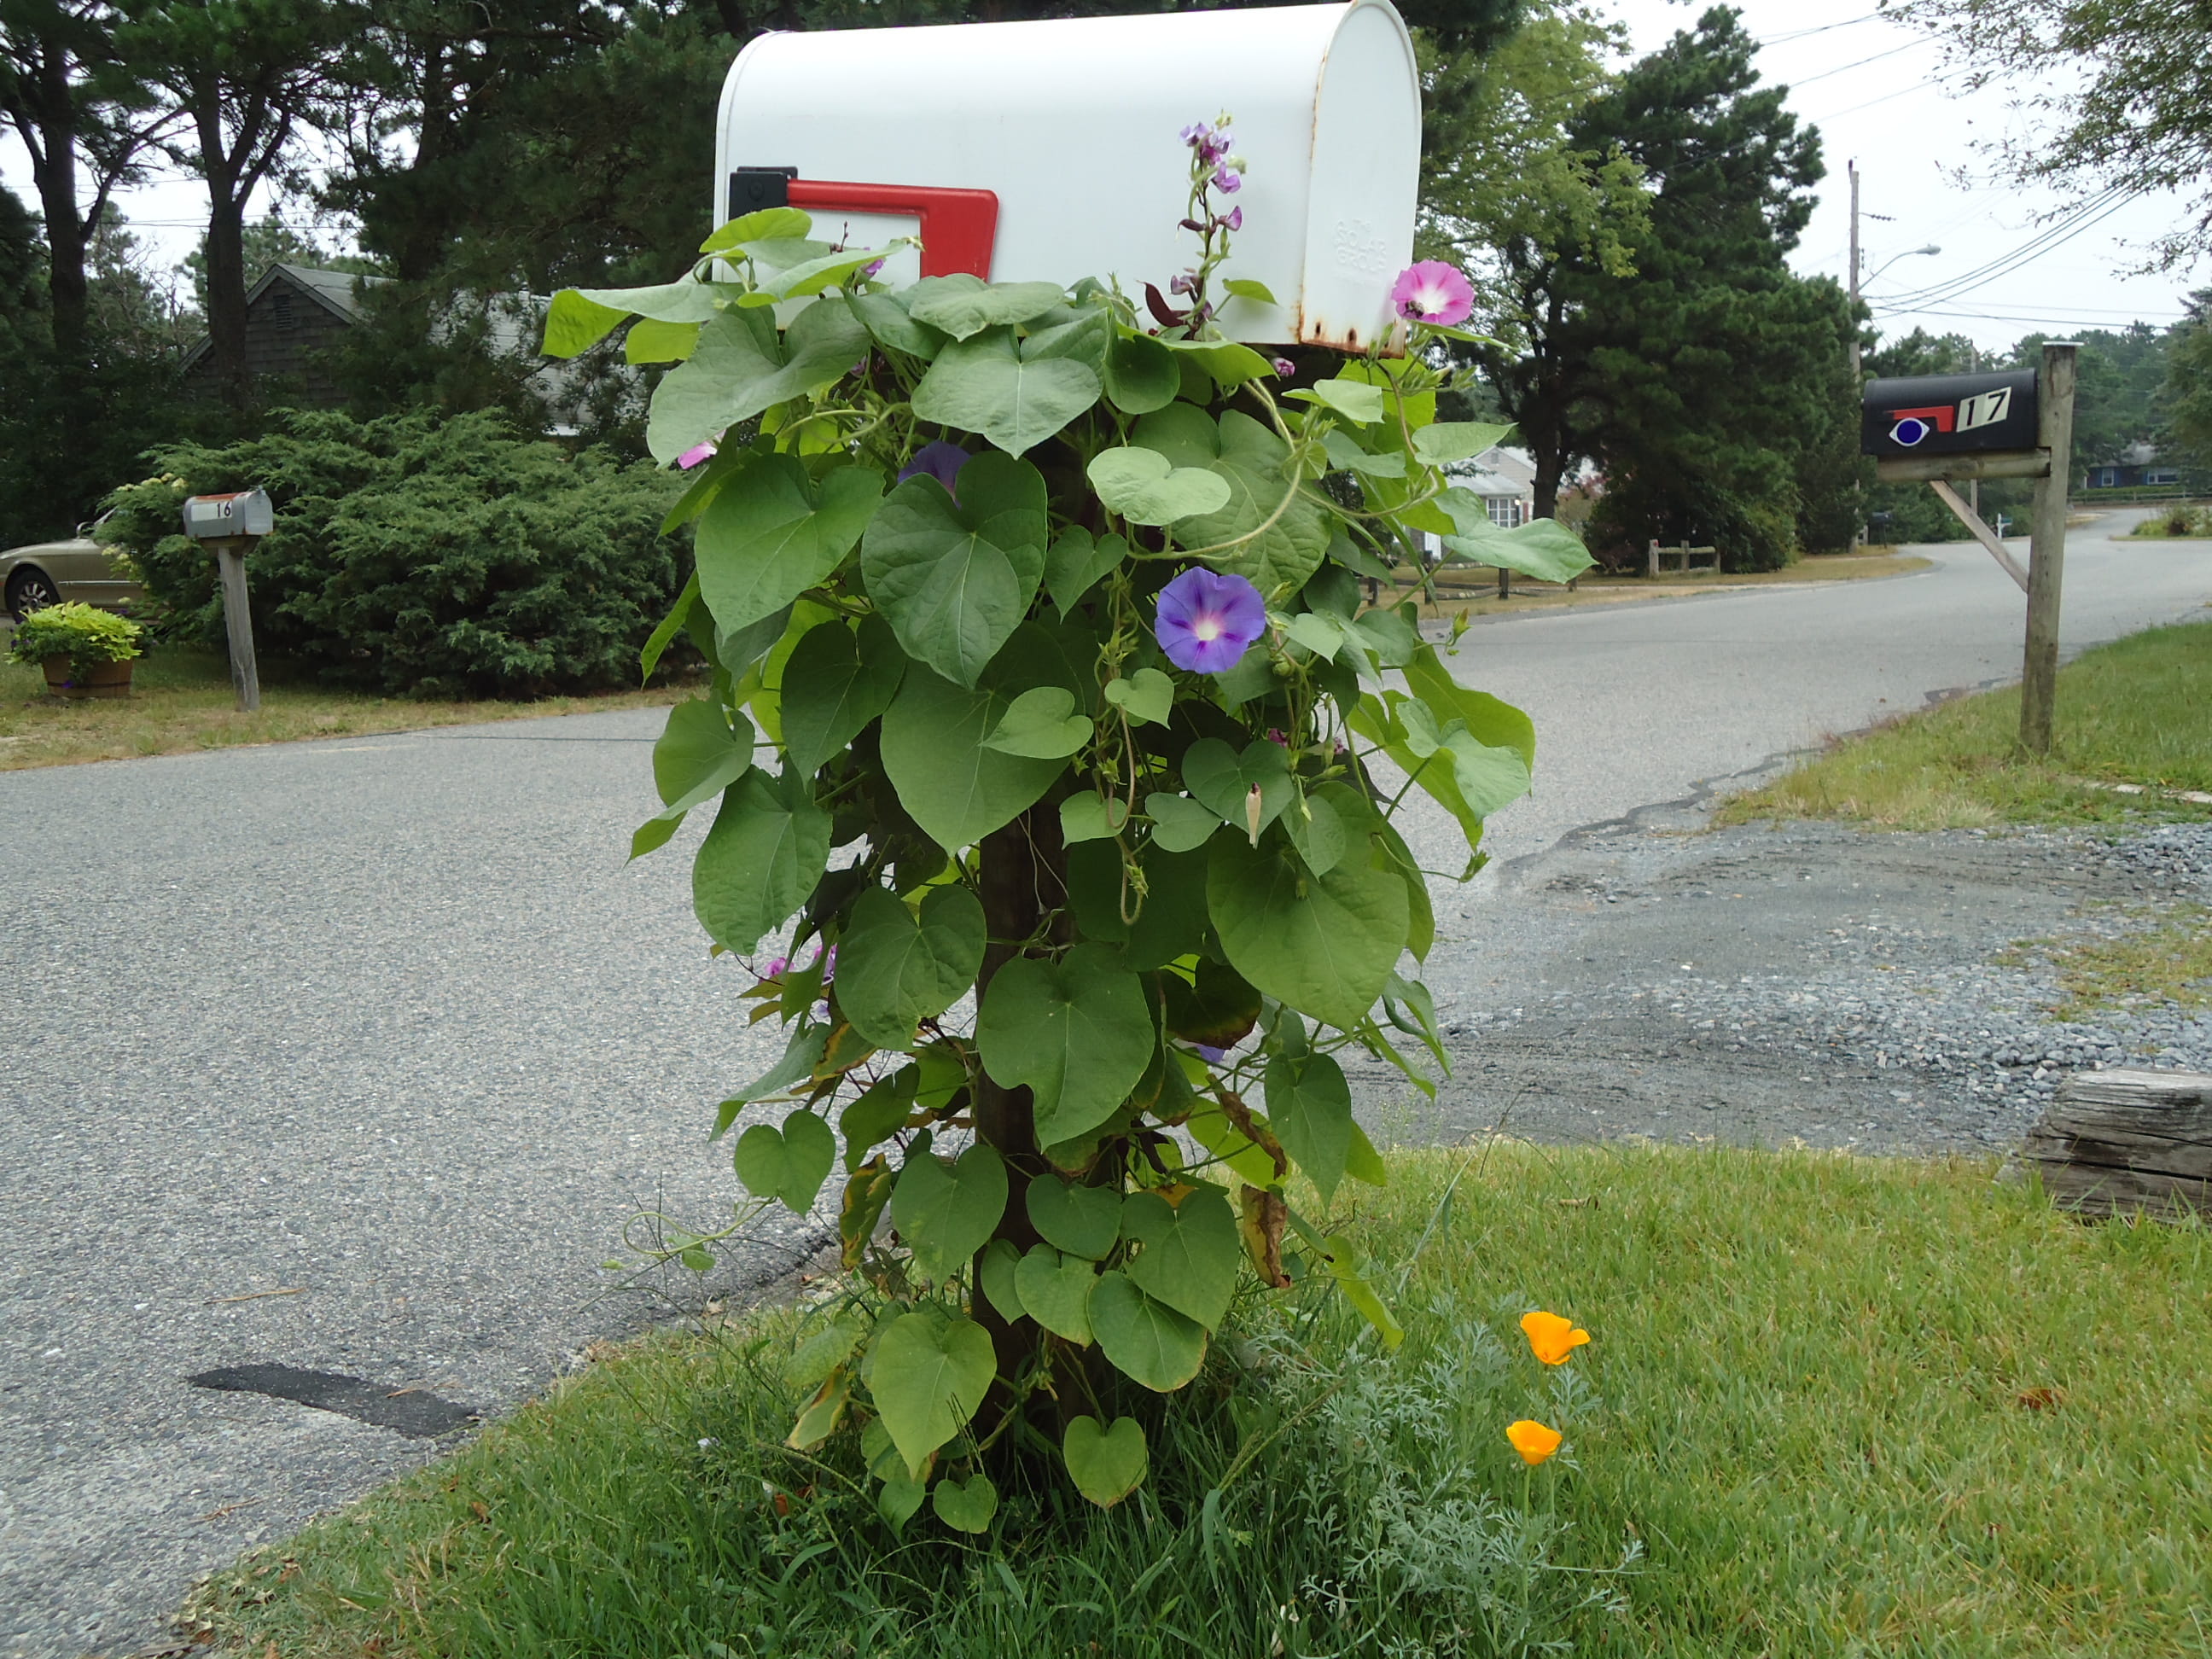 mailbox, post, postal, vine, vines, flowers, street, leaves